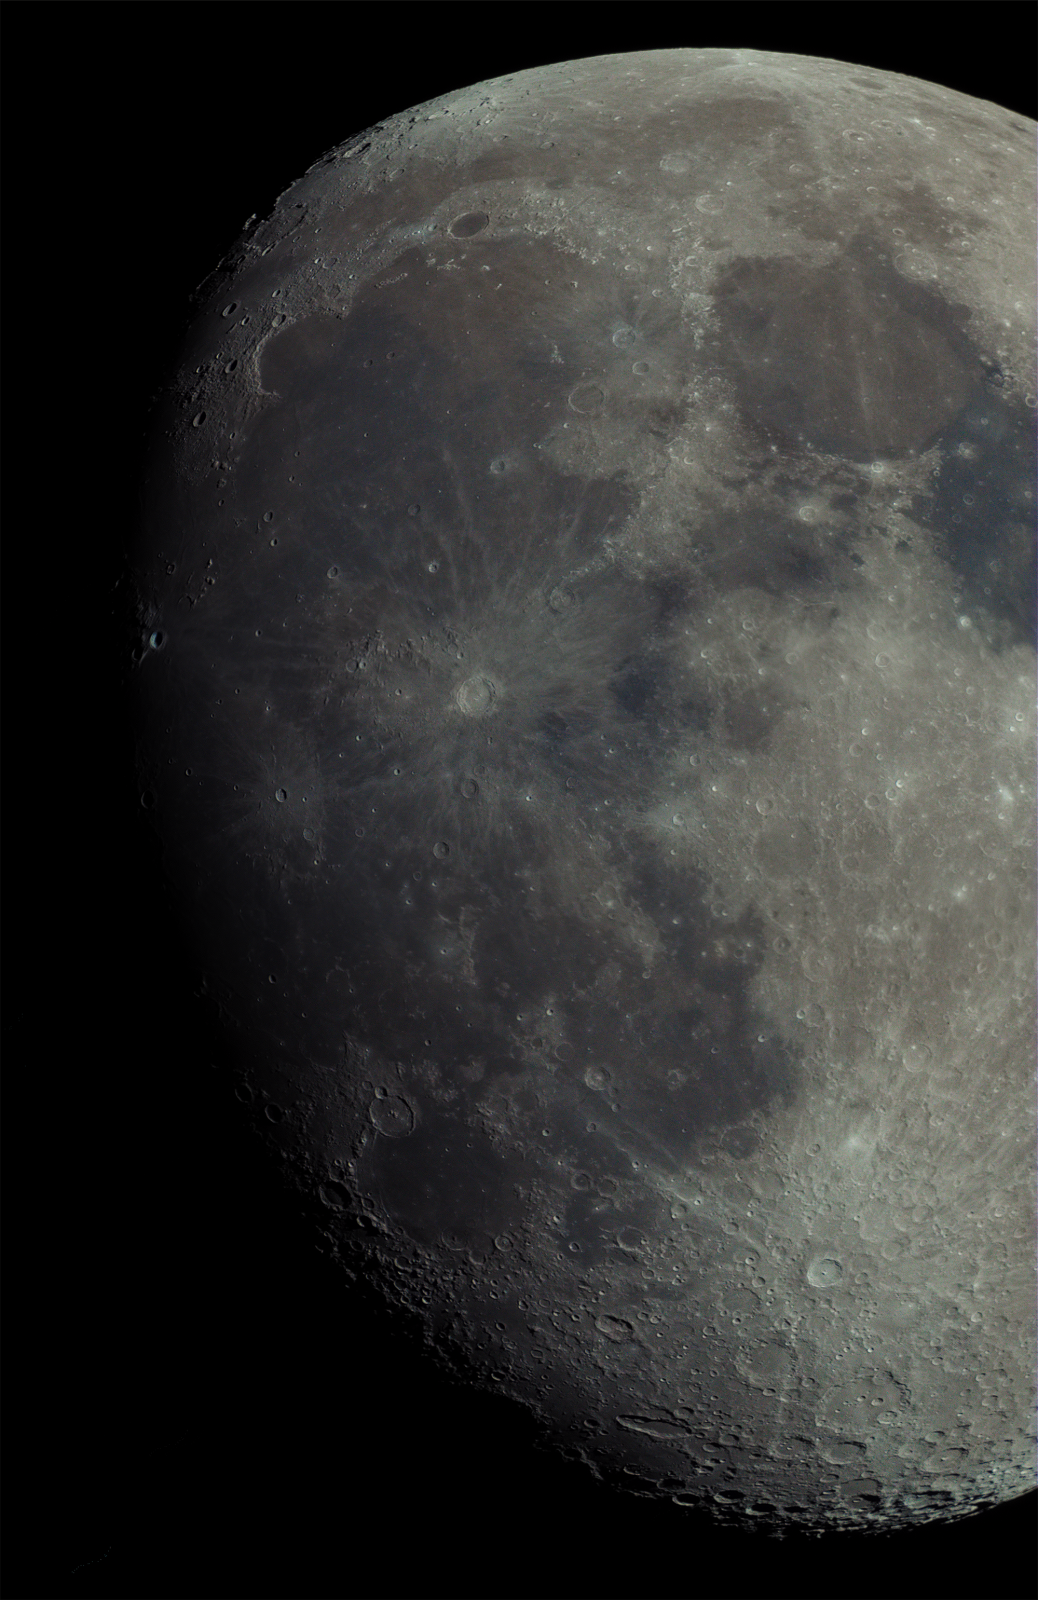 moon-mosaicx3-resize-contrast.thumb.png.49a66c15dec3fc001534837a535aaf2c.png